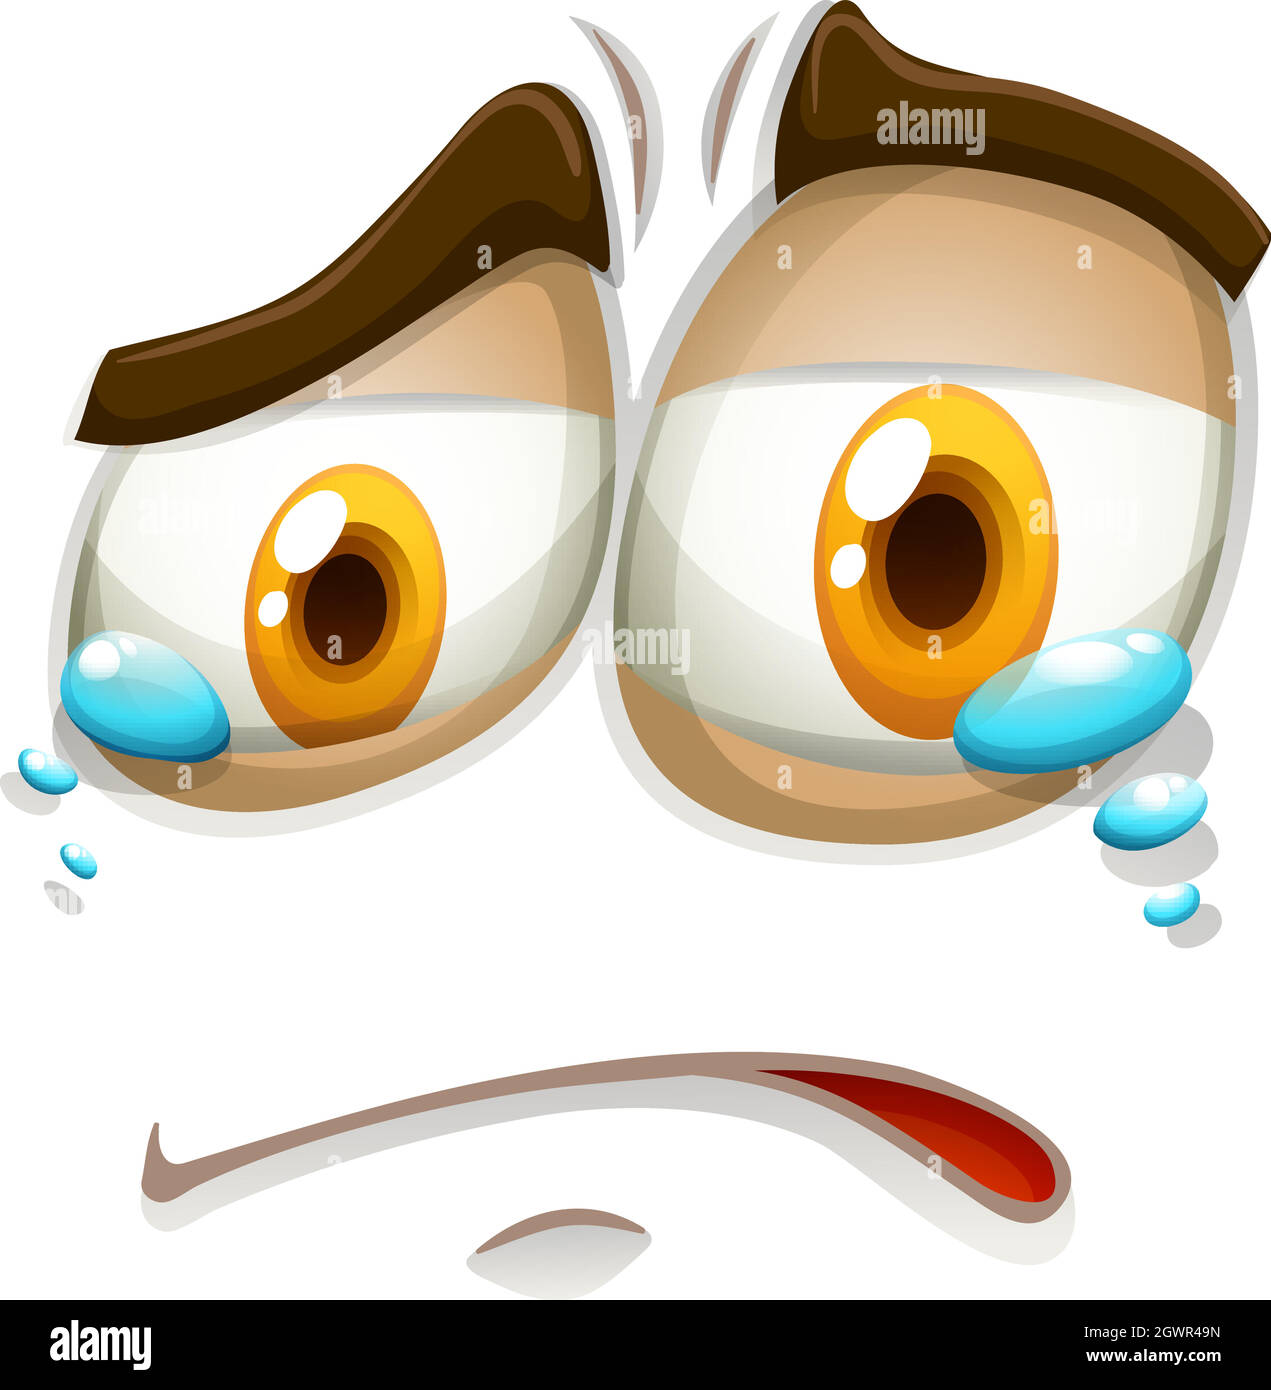 Sad face with tears Stock Vector